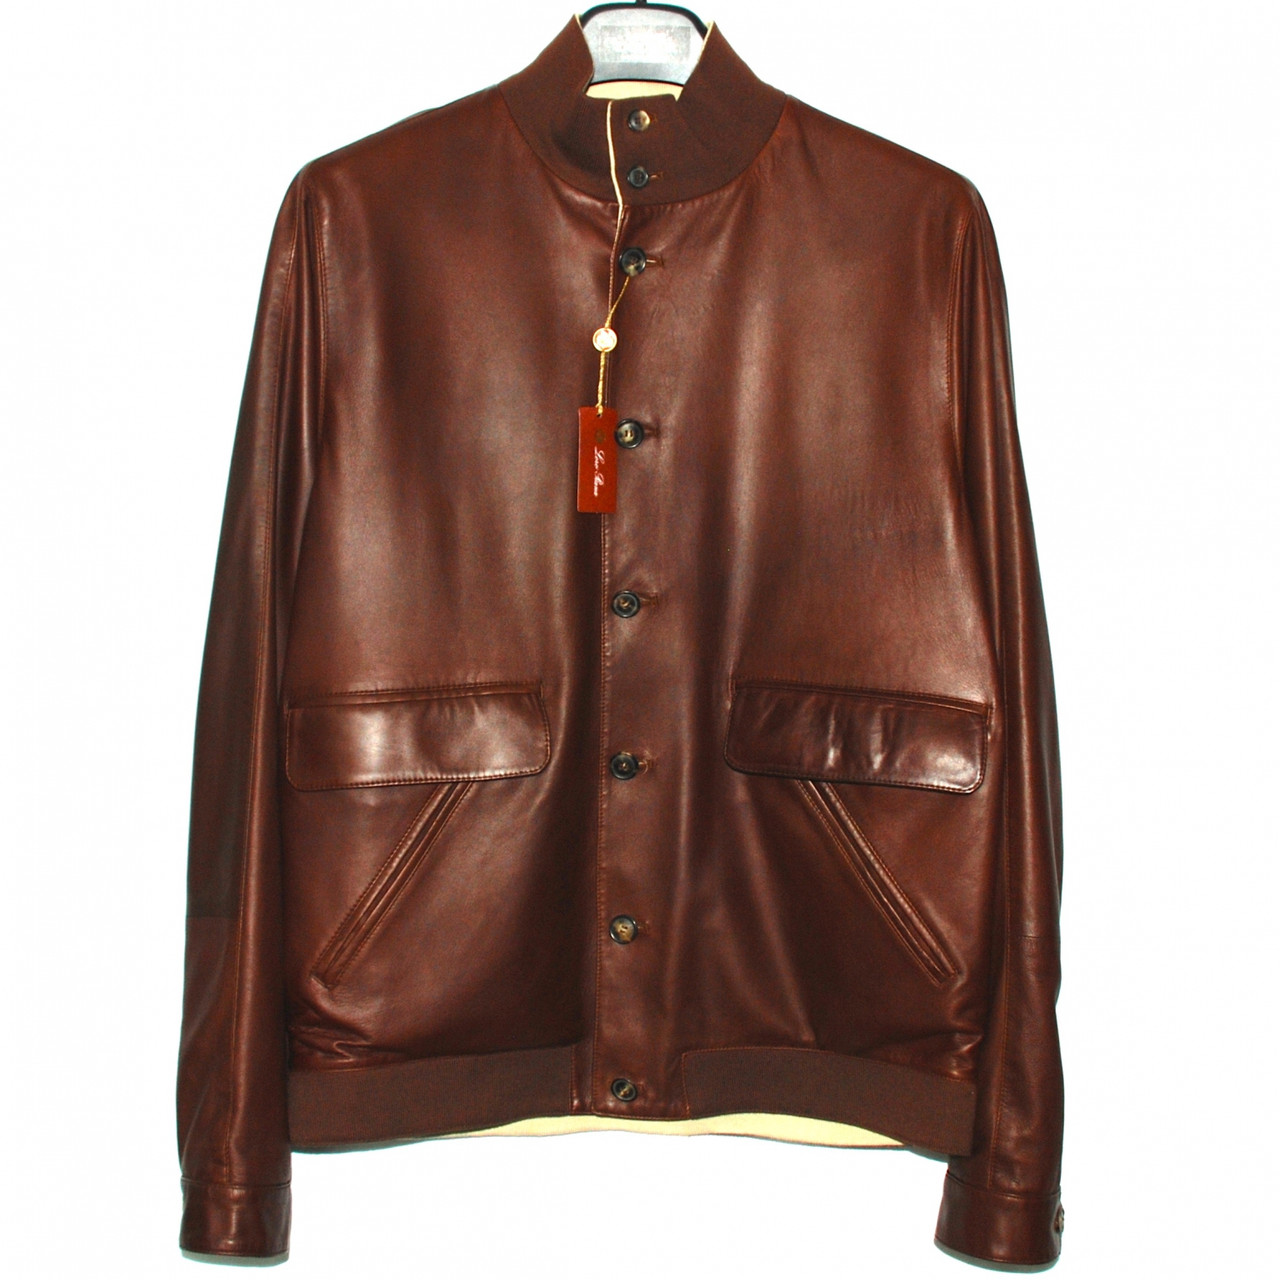 Full Aniline Leather Jacket Care Kit